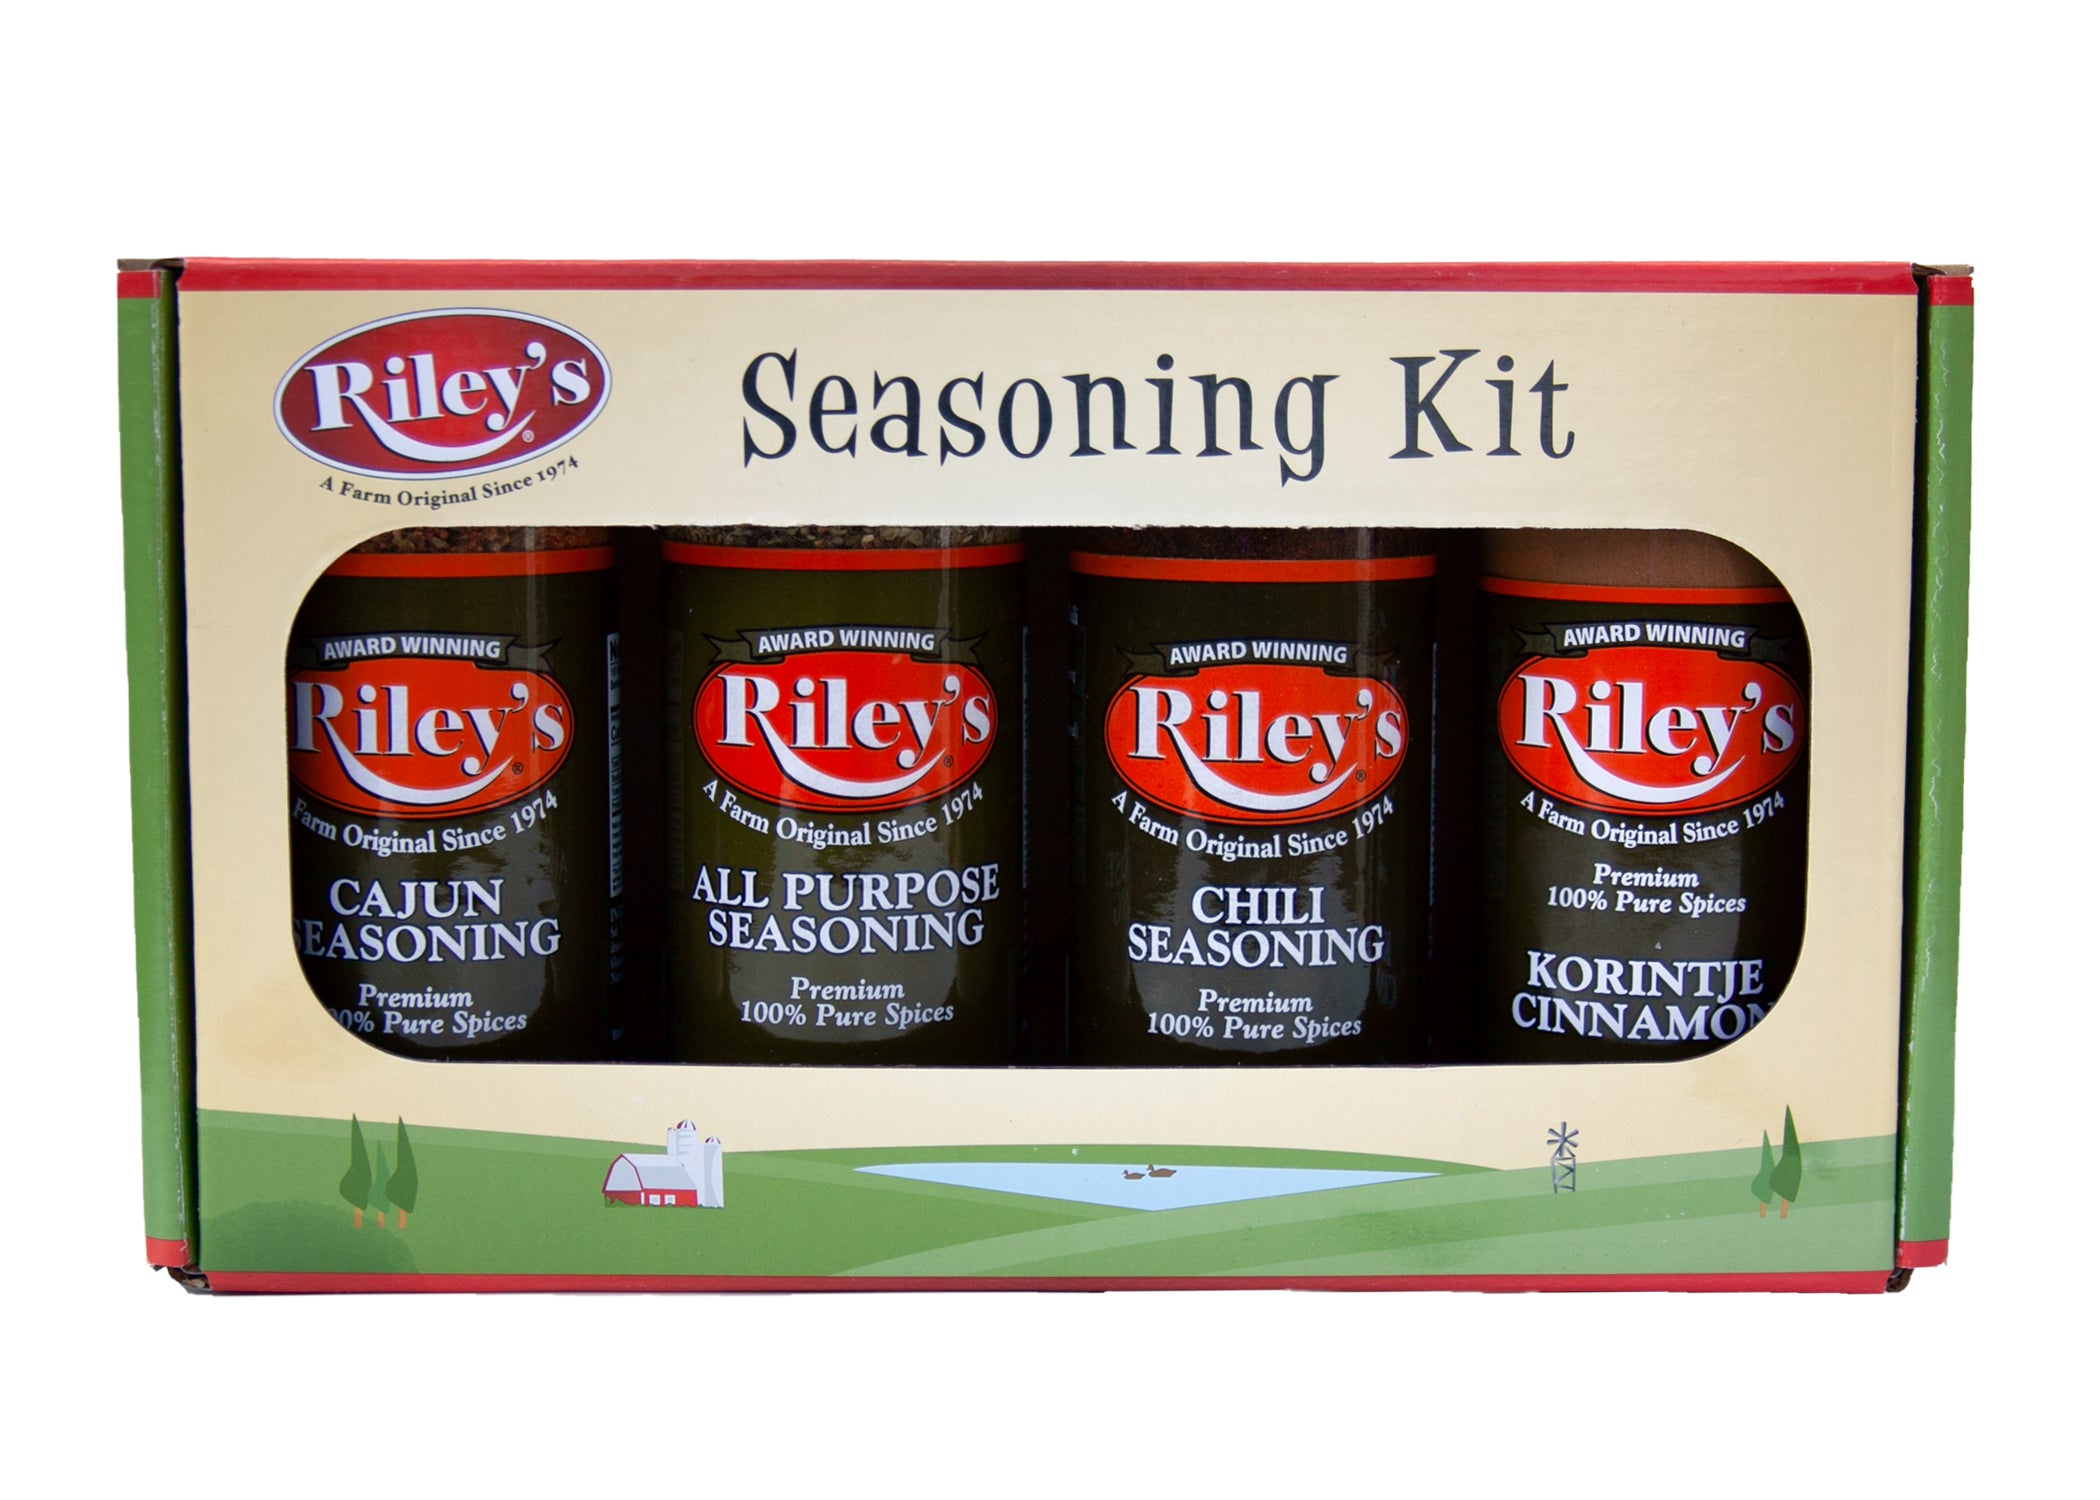 http://rileys-seasonings.com/cdn/shop/files/SeasoningKitFront-1.jpg?v=1692985986